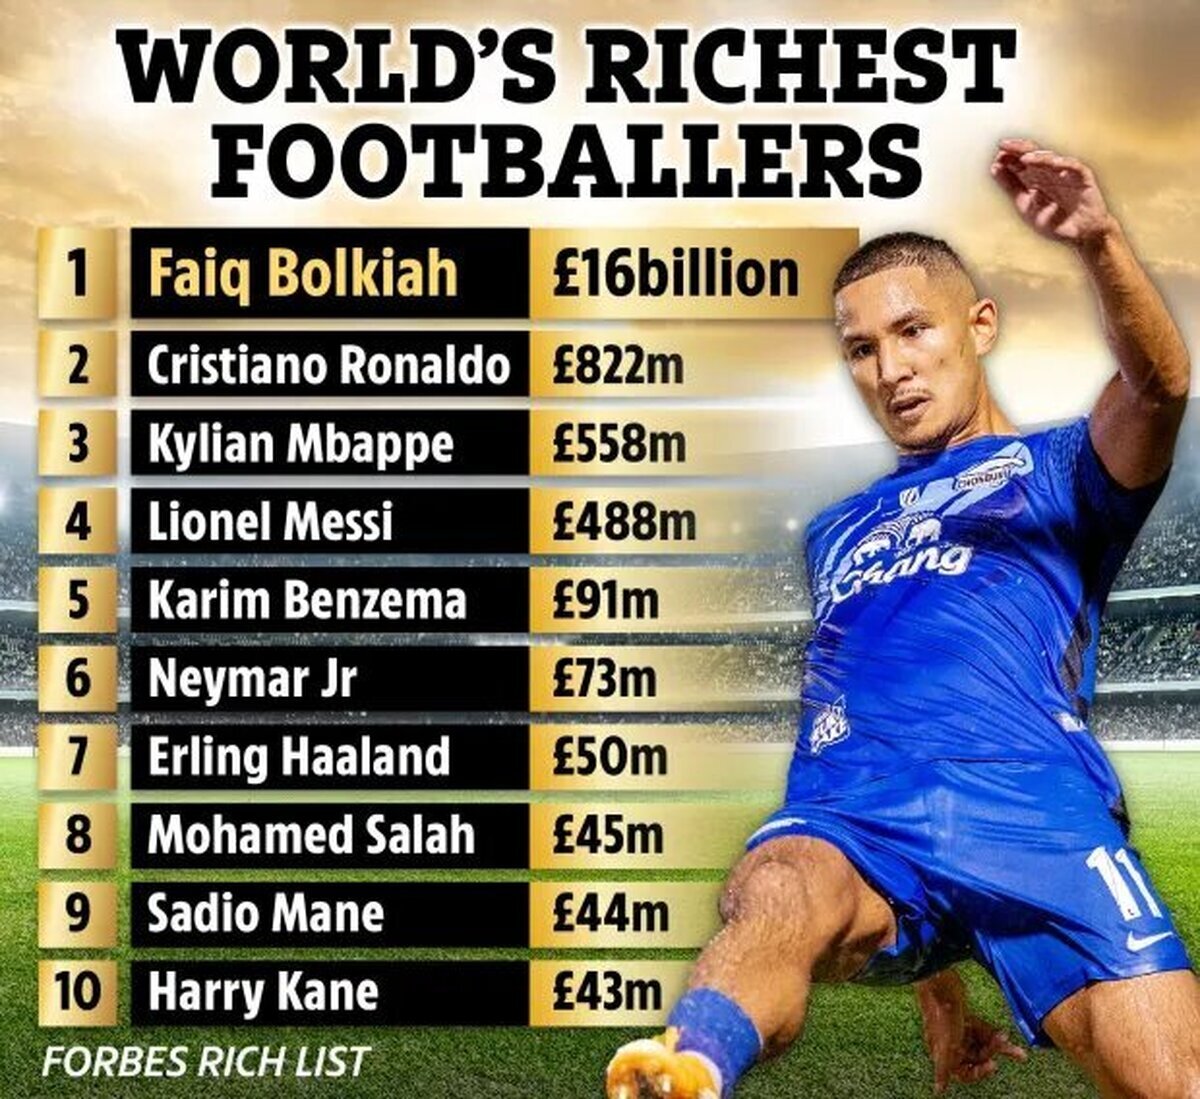 فوتبالیست گمنامی که ۱۲ برابر مجموع ثروت رونالدو و مسی پول دارد!